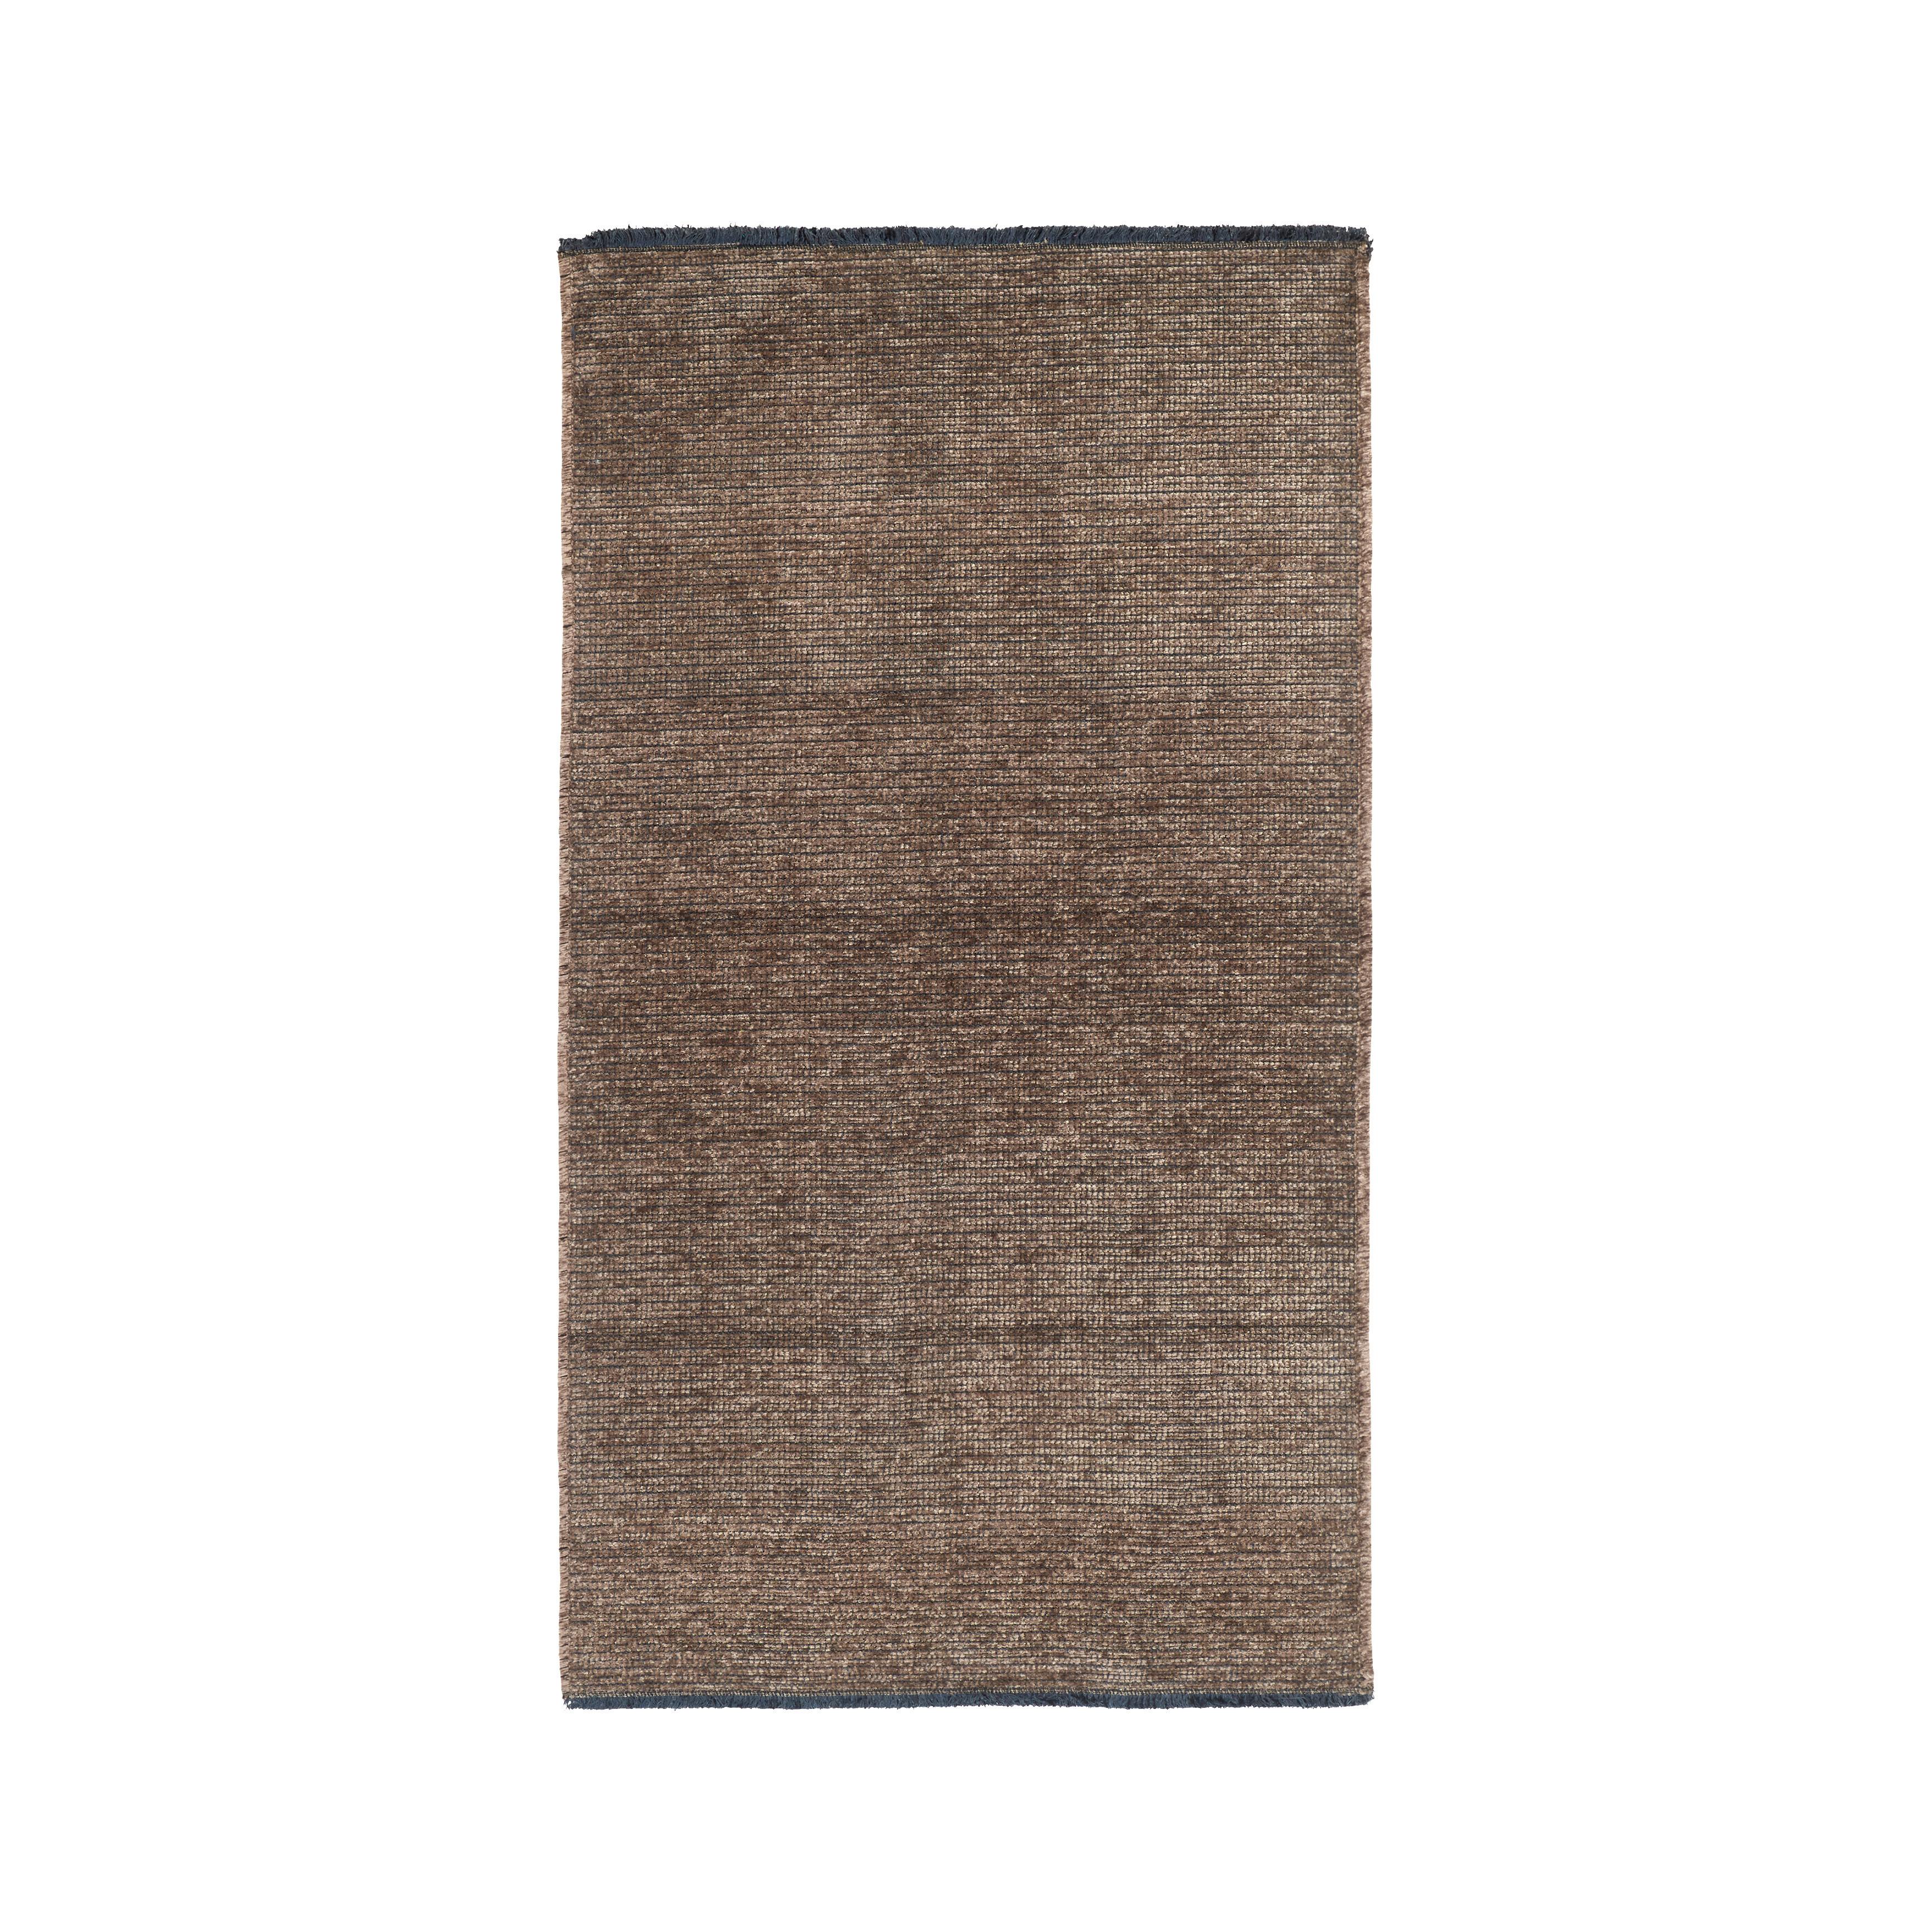 Szőtt Szőnyeg Silke 120/170 - Barna, romantikus/Landhaus, Textil (120/170cm) - Modern Living